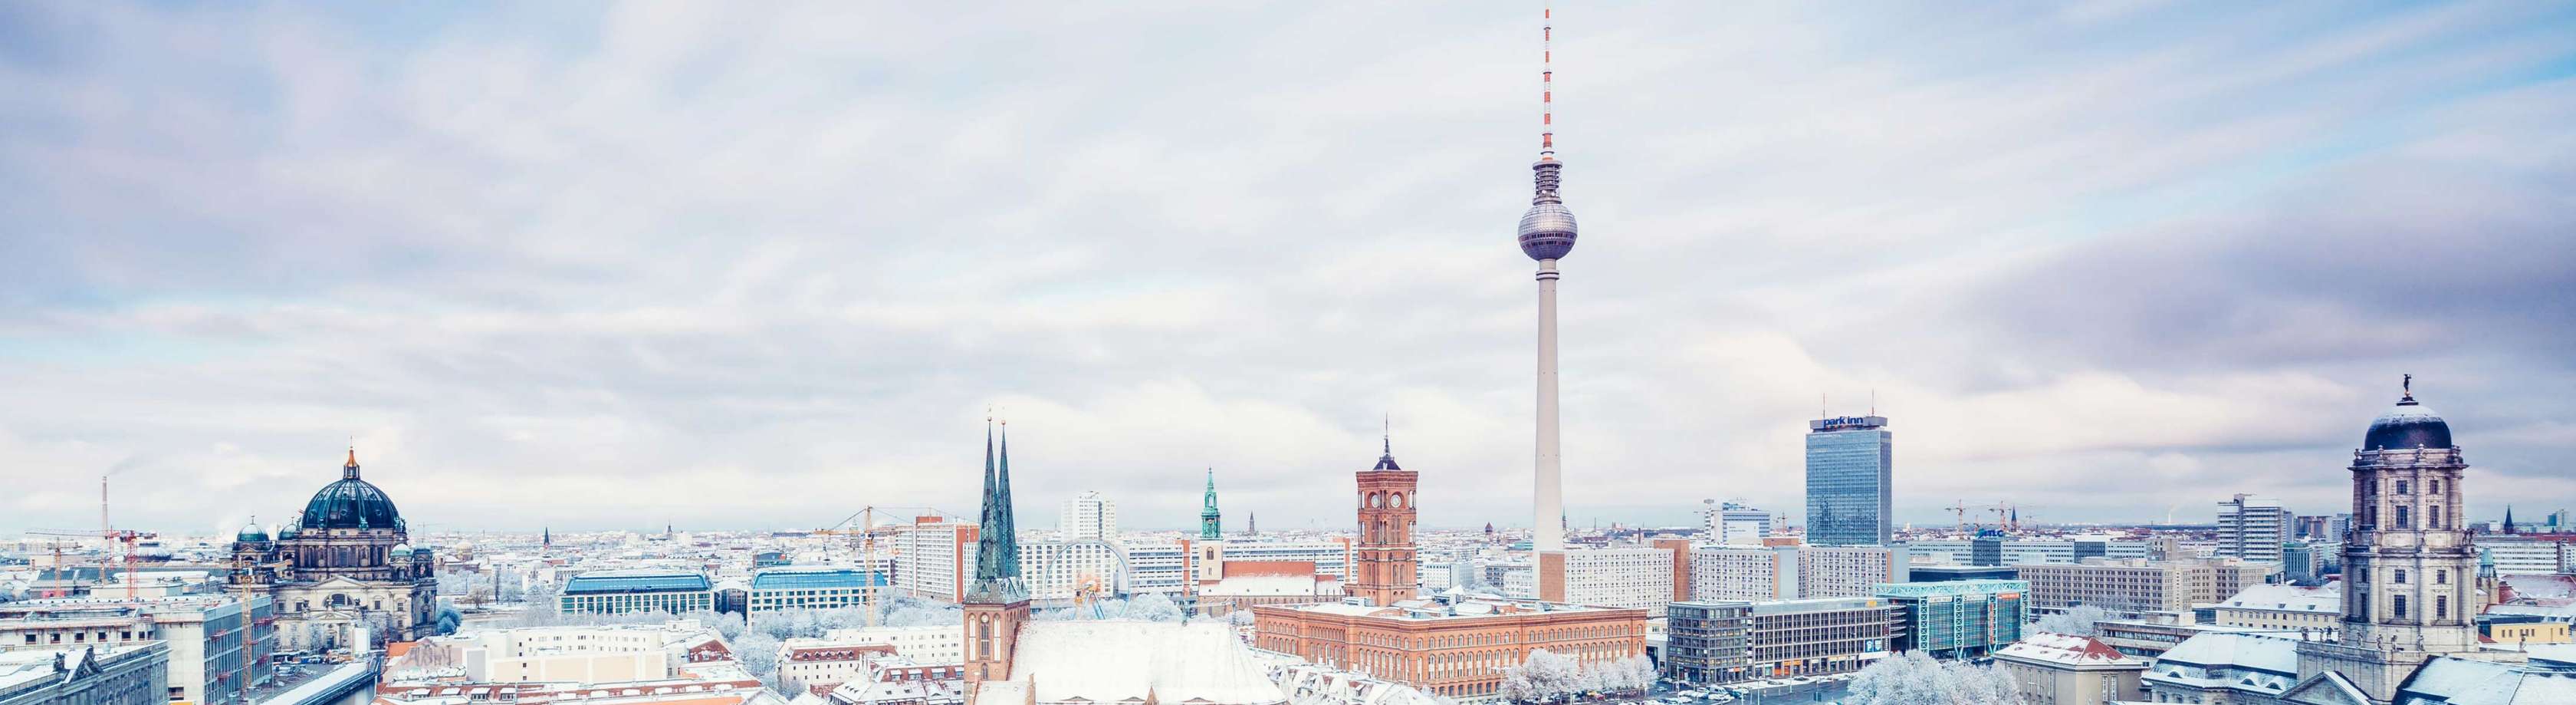 Kfz-Versicherung in Berlin: Lassen Sie sich von unseren kompetenten Experten zu Ihrer Versicherung beraten